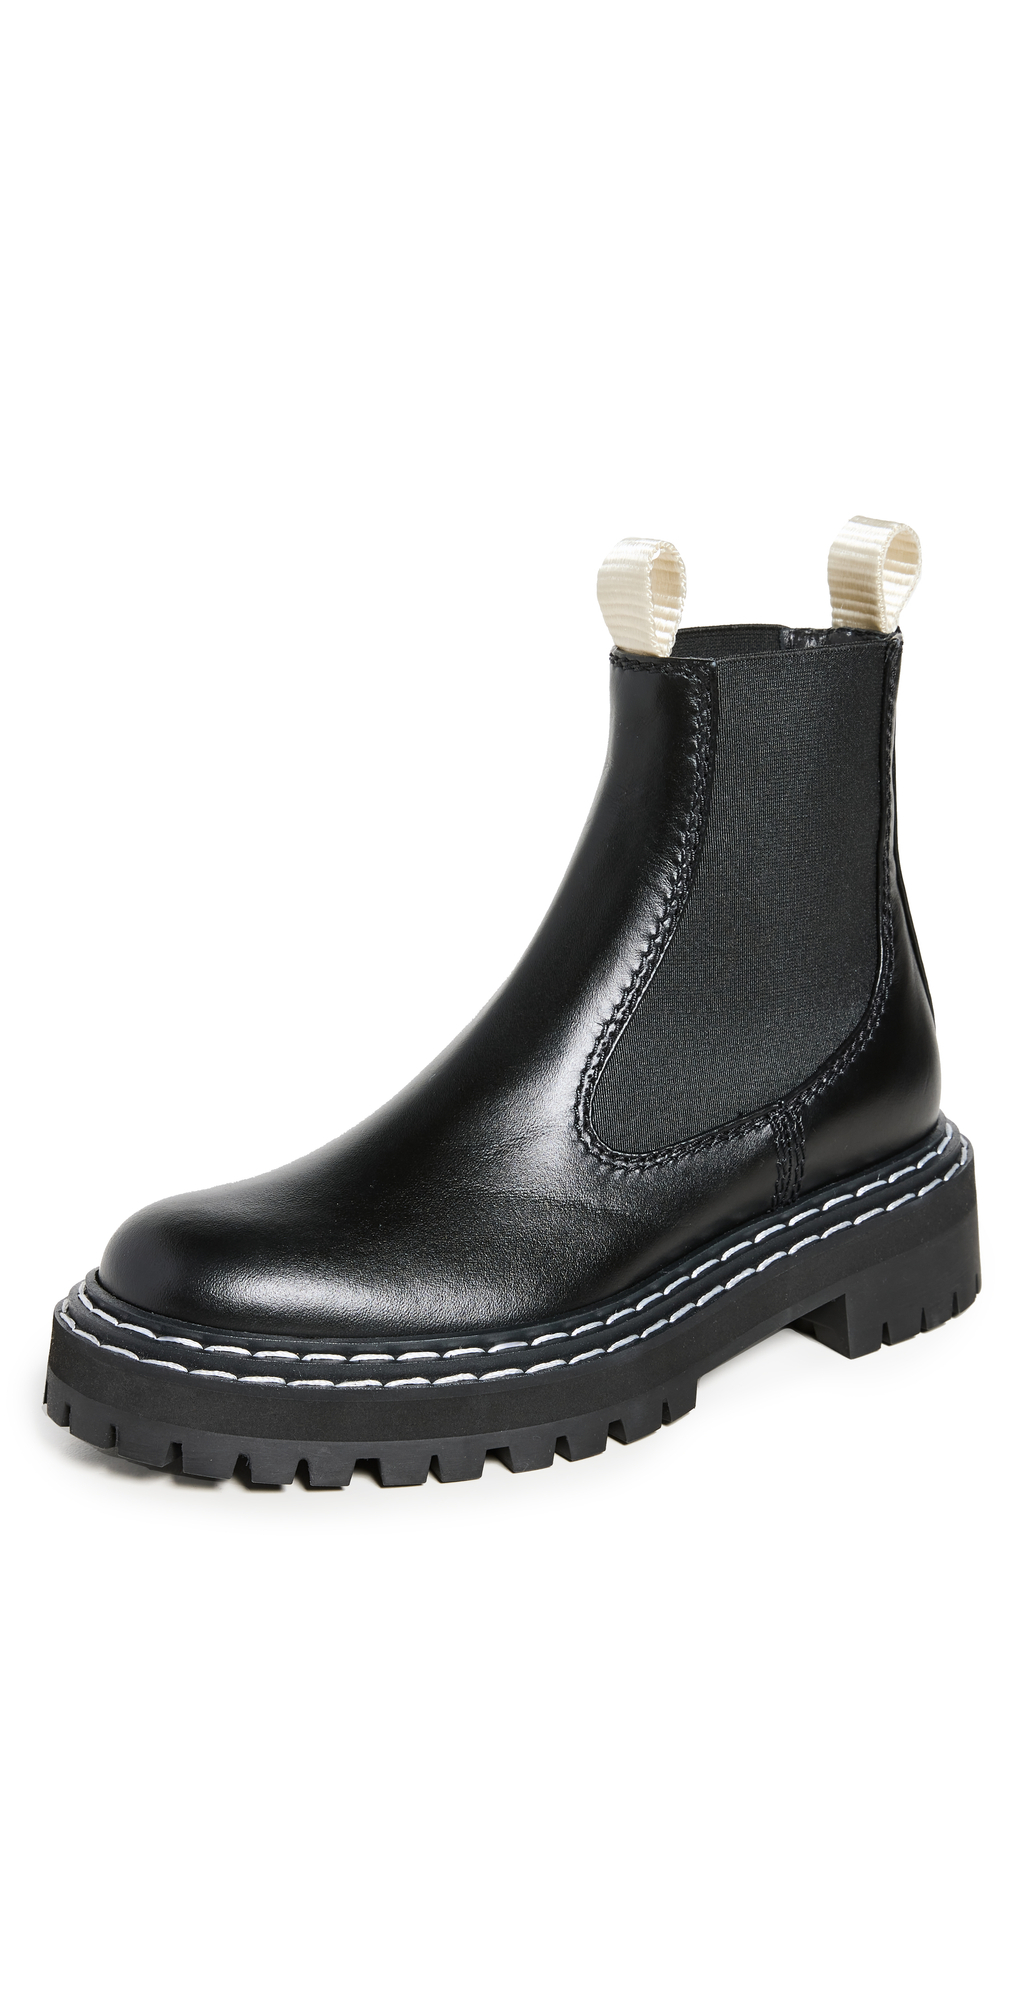 Proenza Schouler Lug Chelsea Boots in black